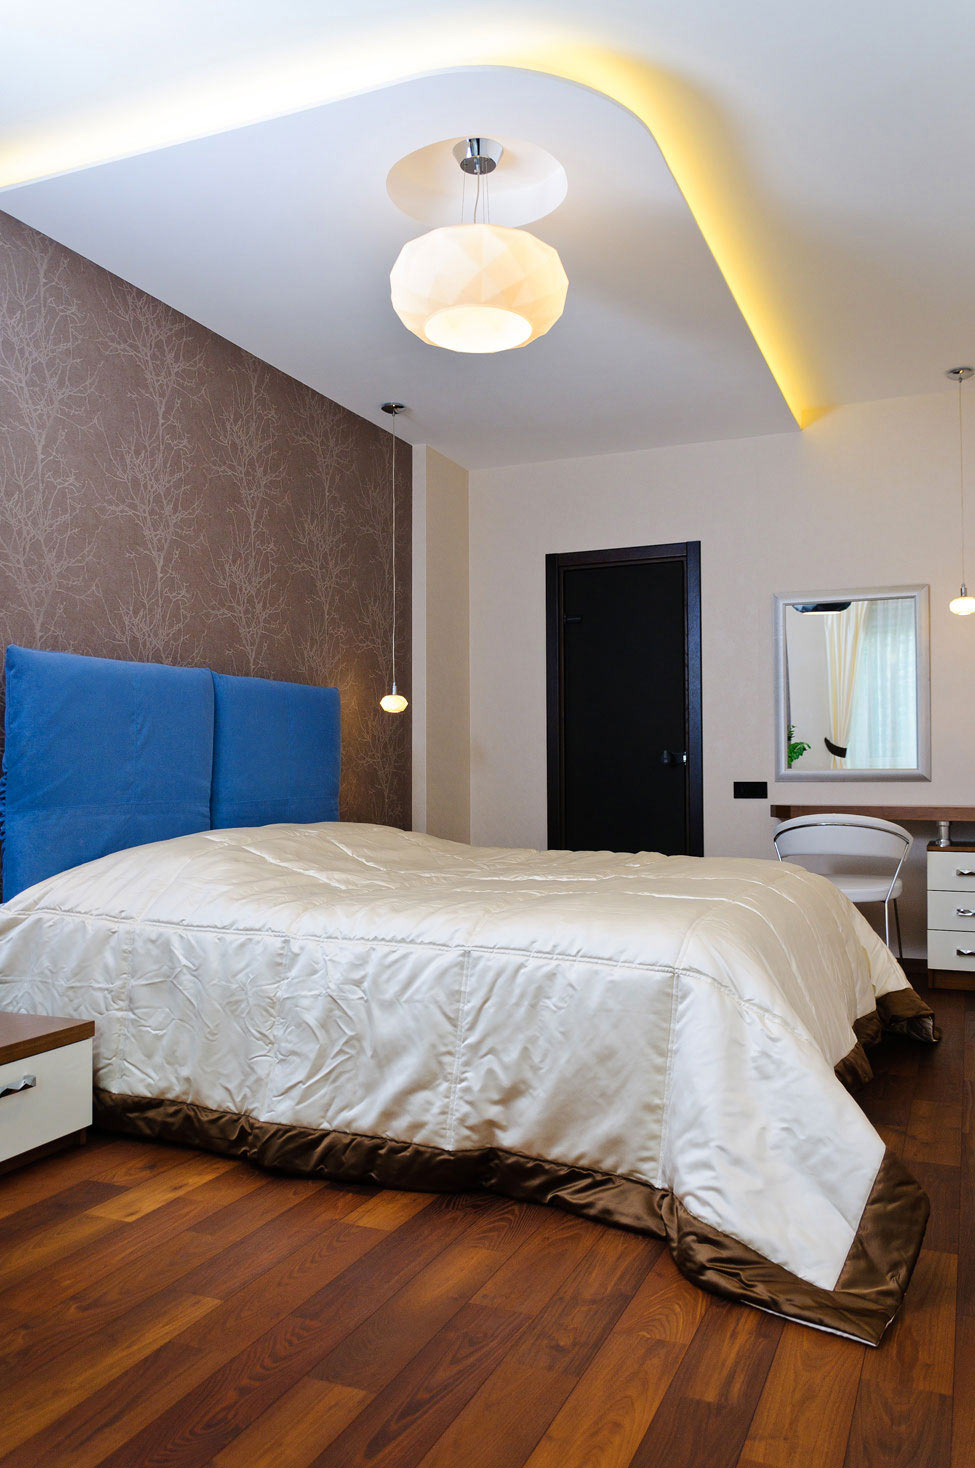 Bedroom, Apartment Renovation in Odessa, Ukraine